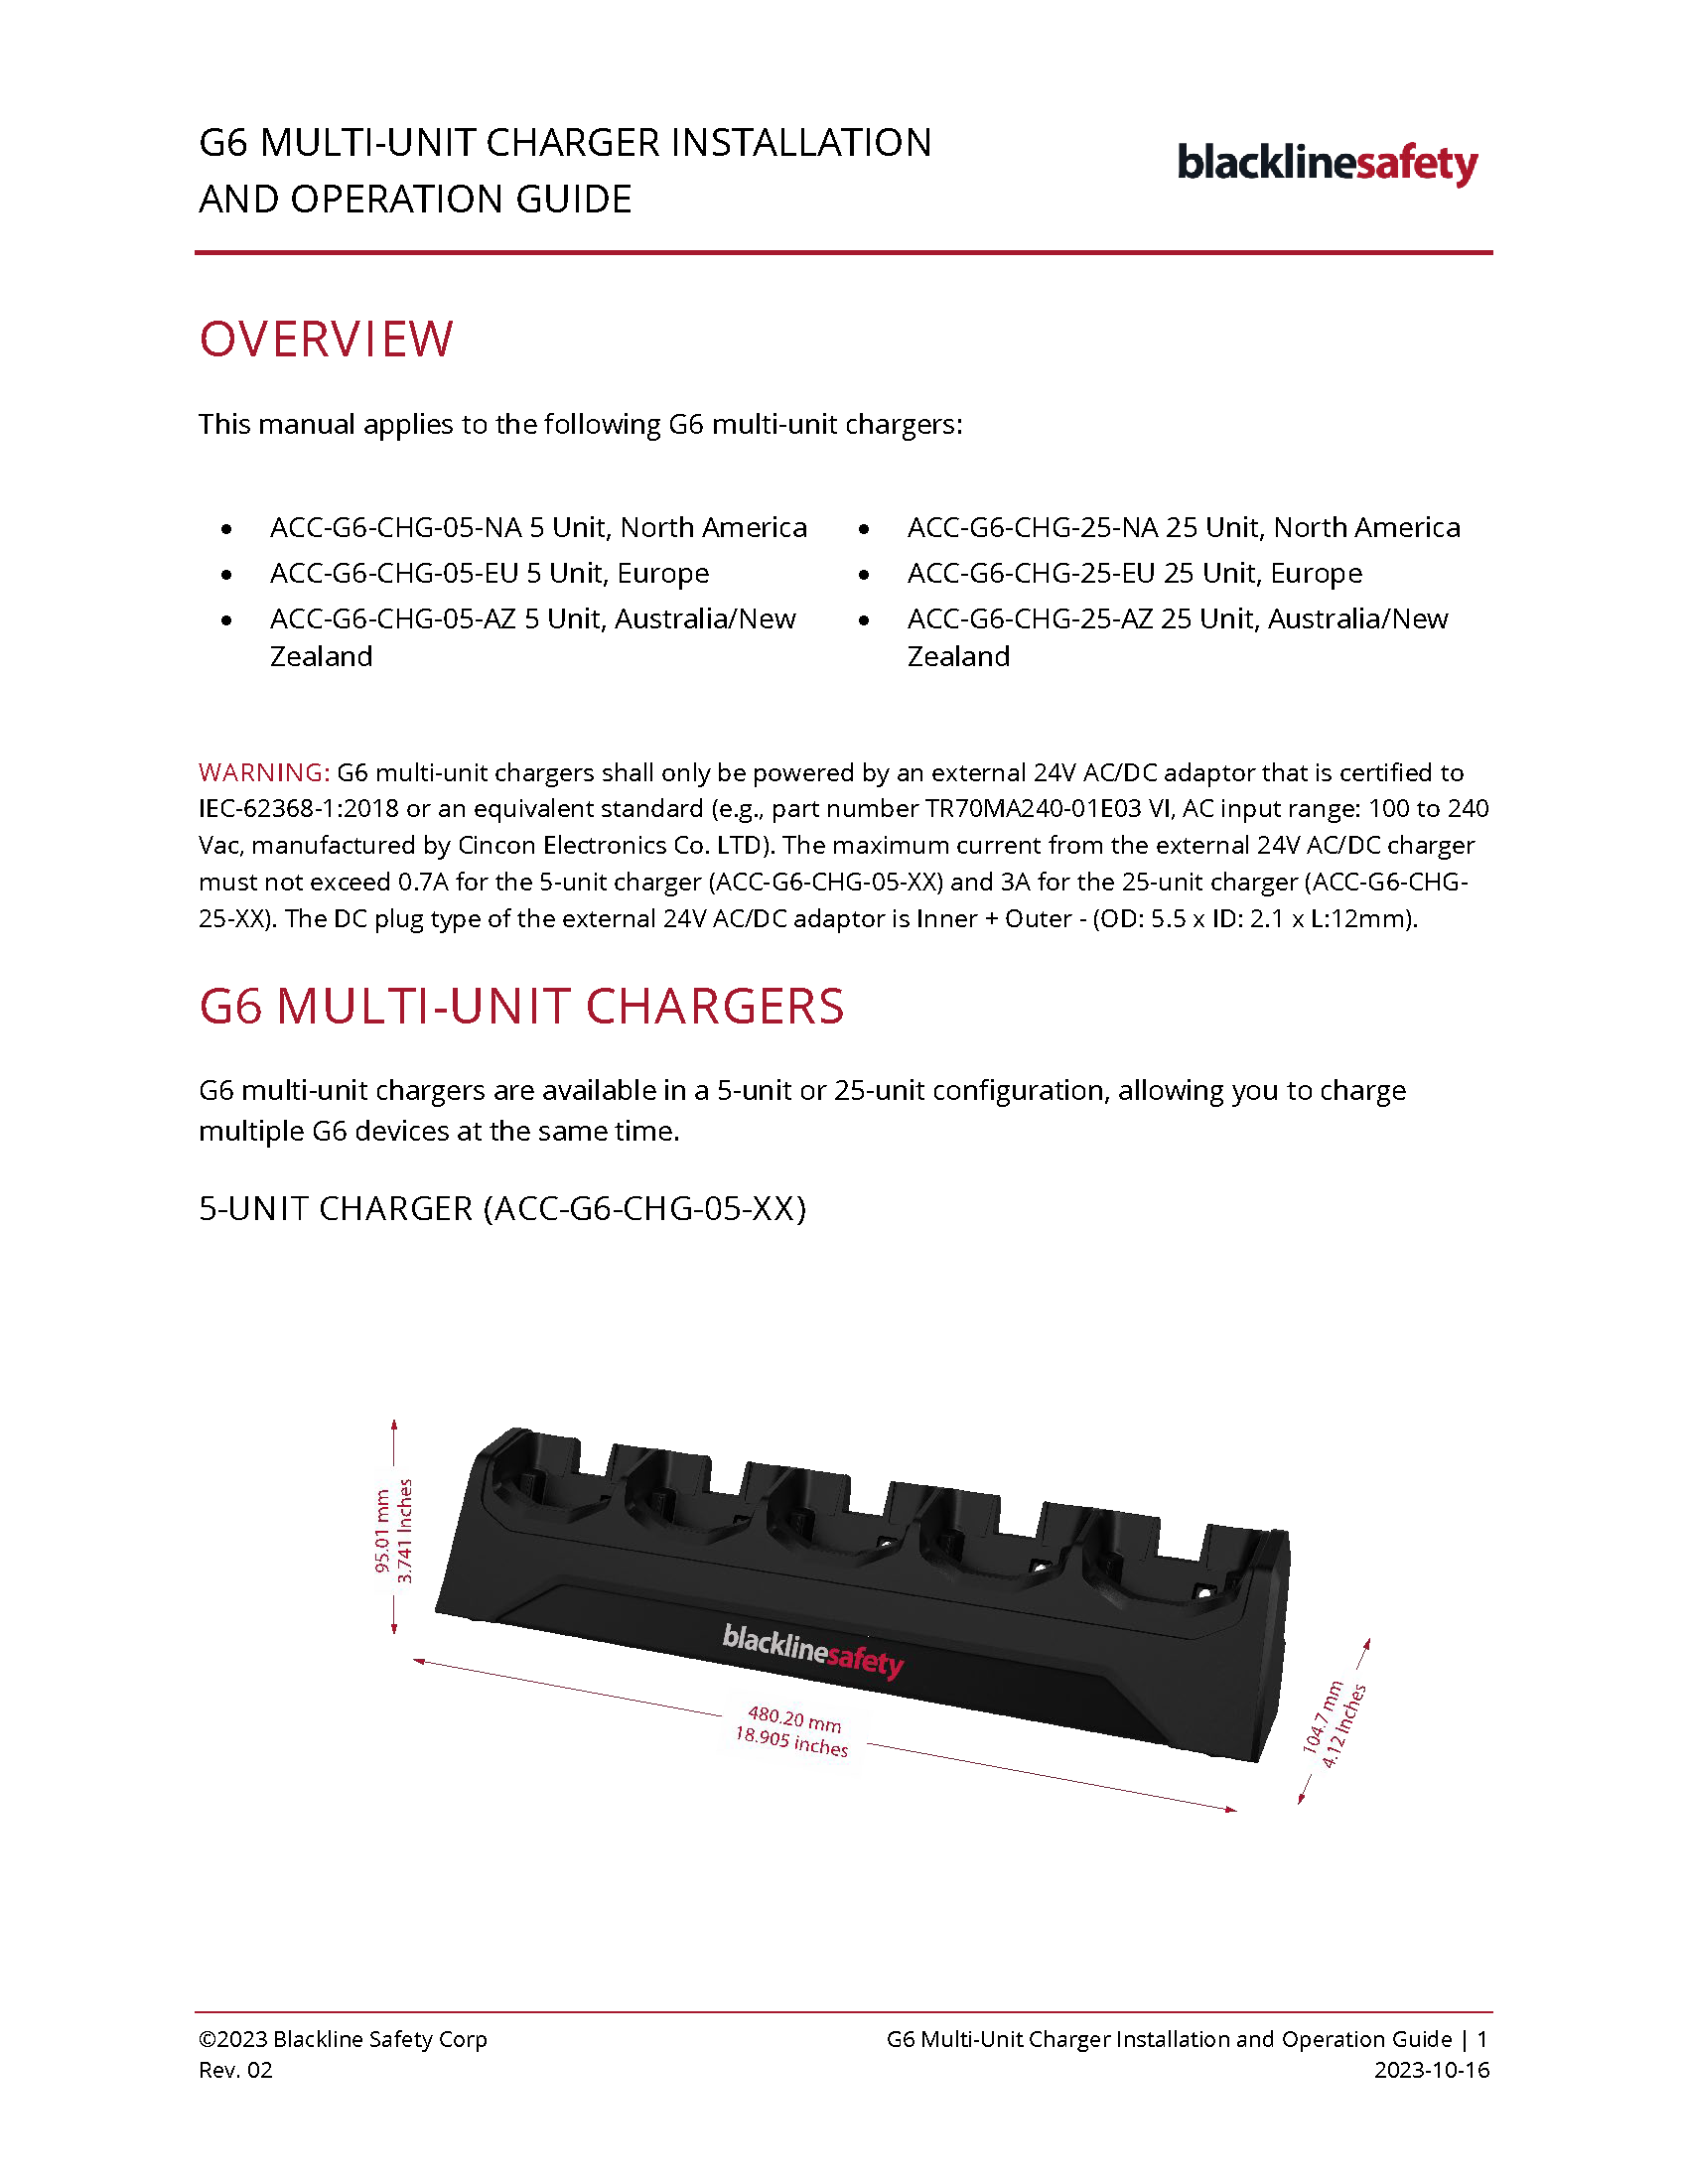 Guía de instalación y funcionamiento del cargador G6 Multi-Unit_Cubierta